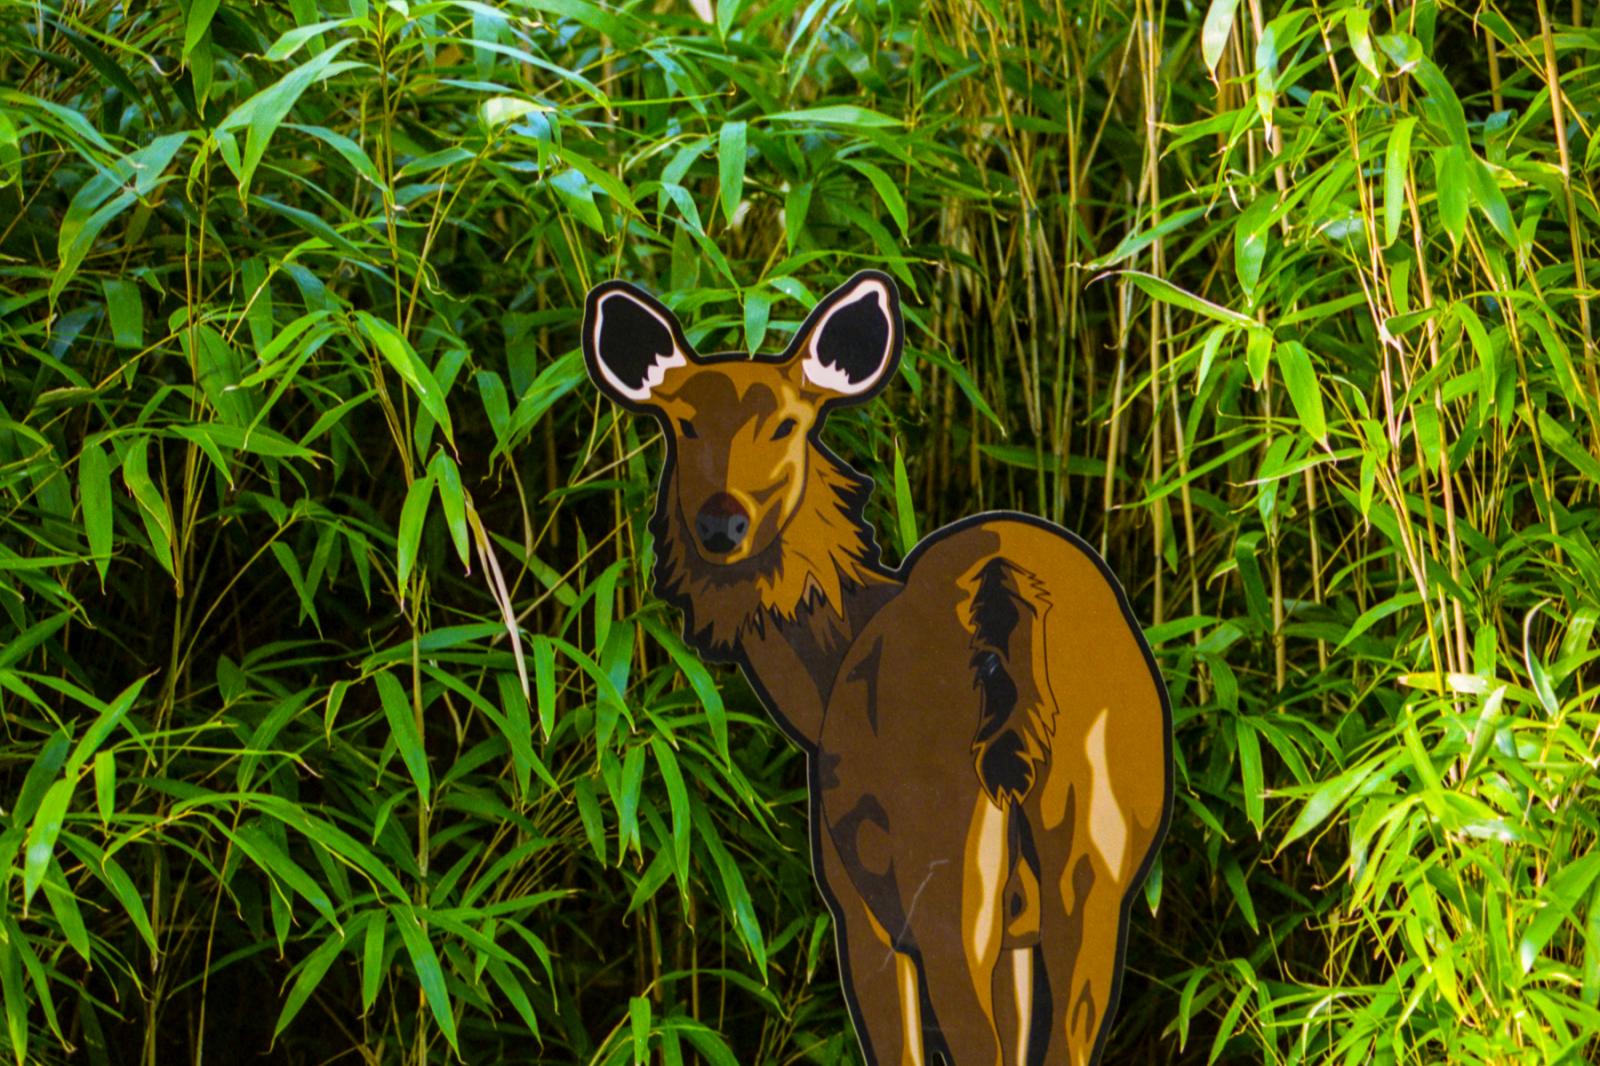 Image from Aesthetic - Deer exhibit, Smithsonian National Zoo. Washington, DC.